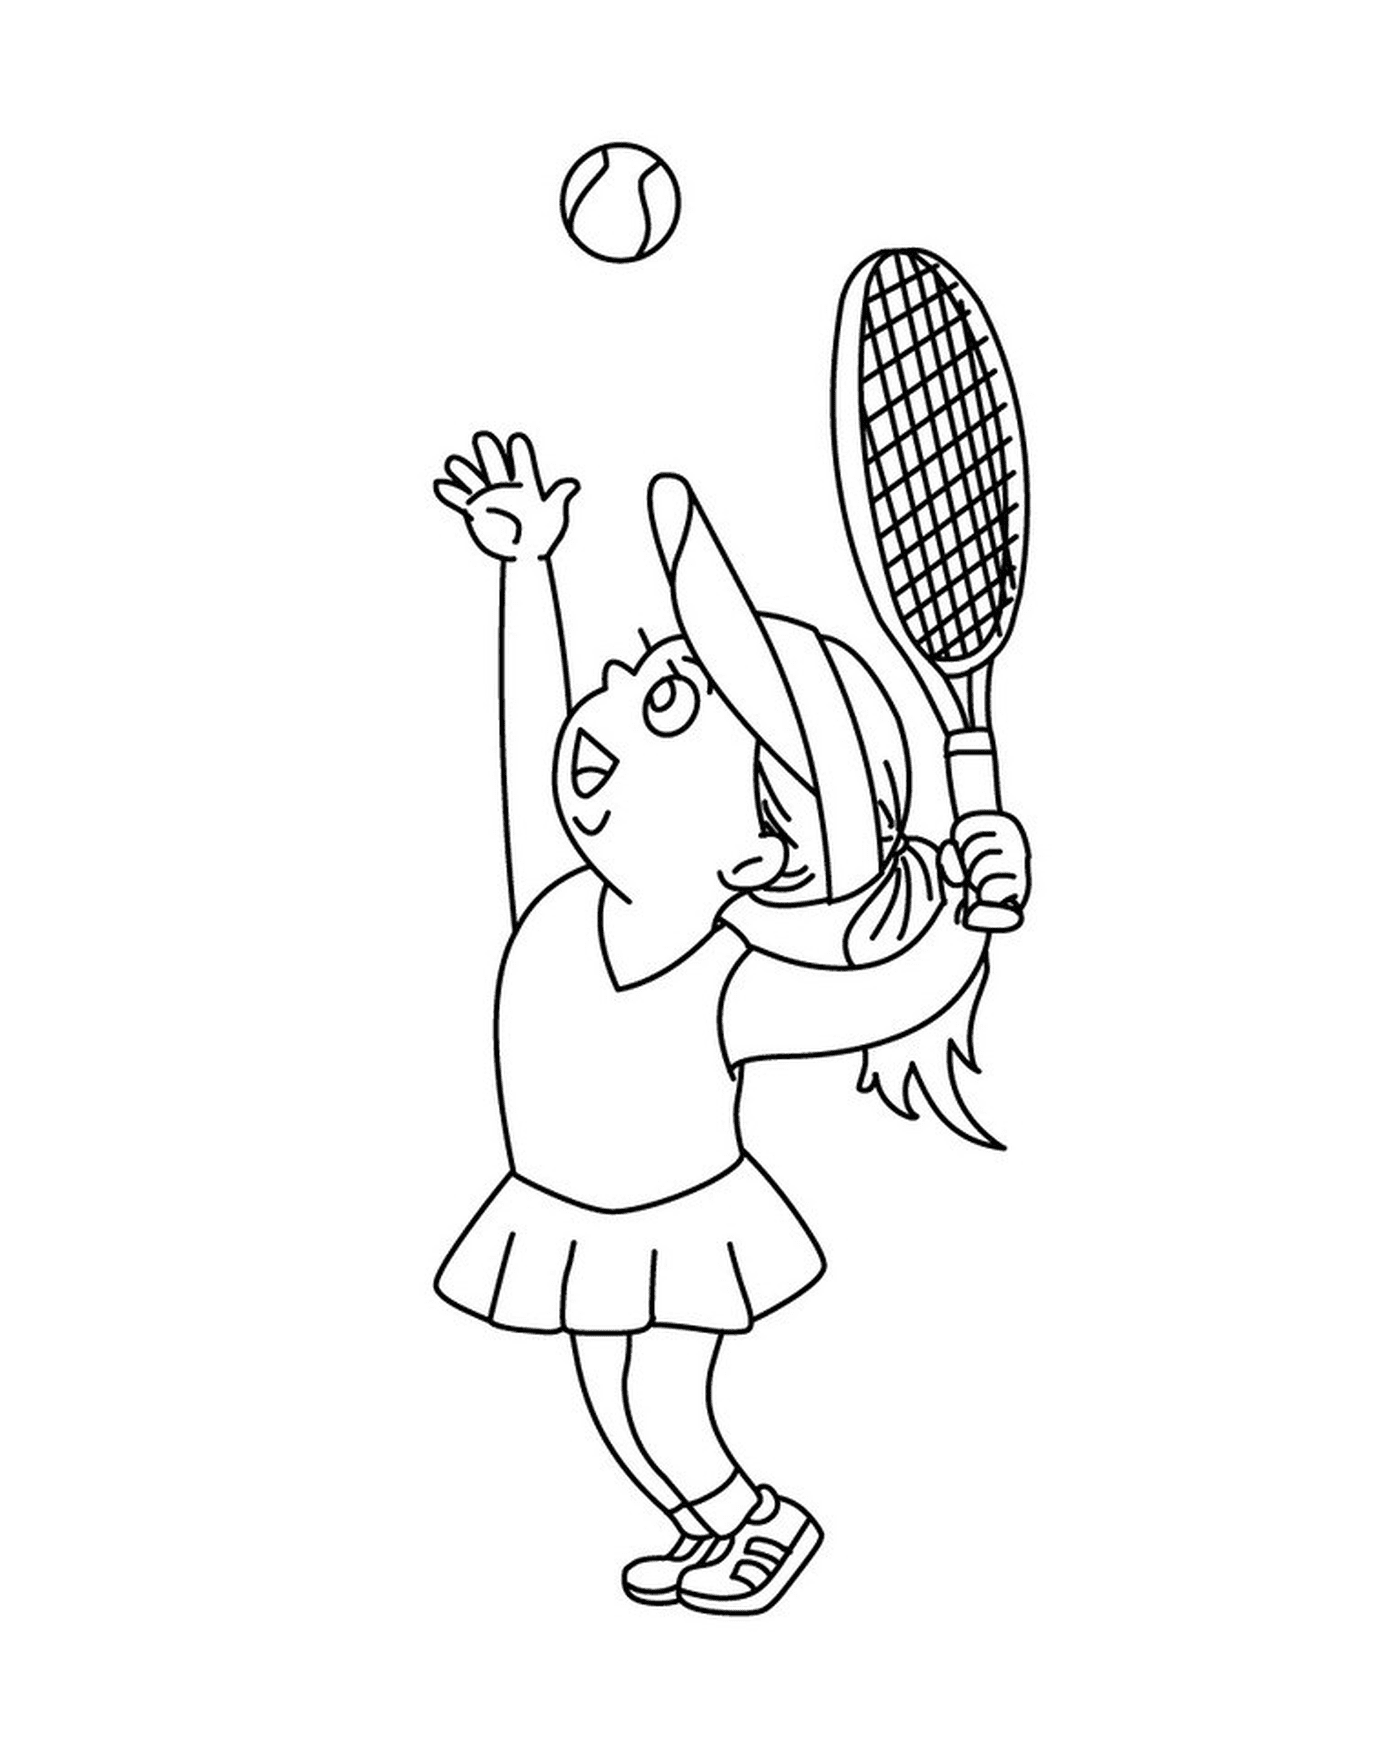  Uma menina joga tênis 